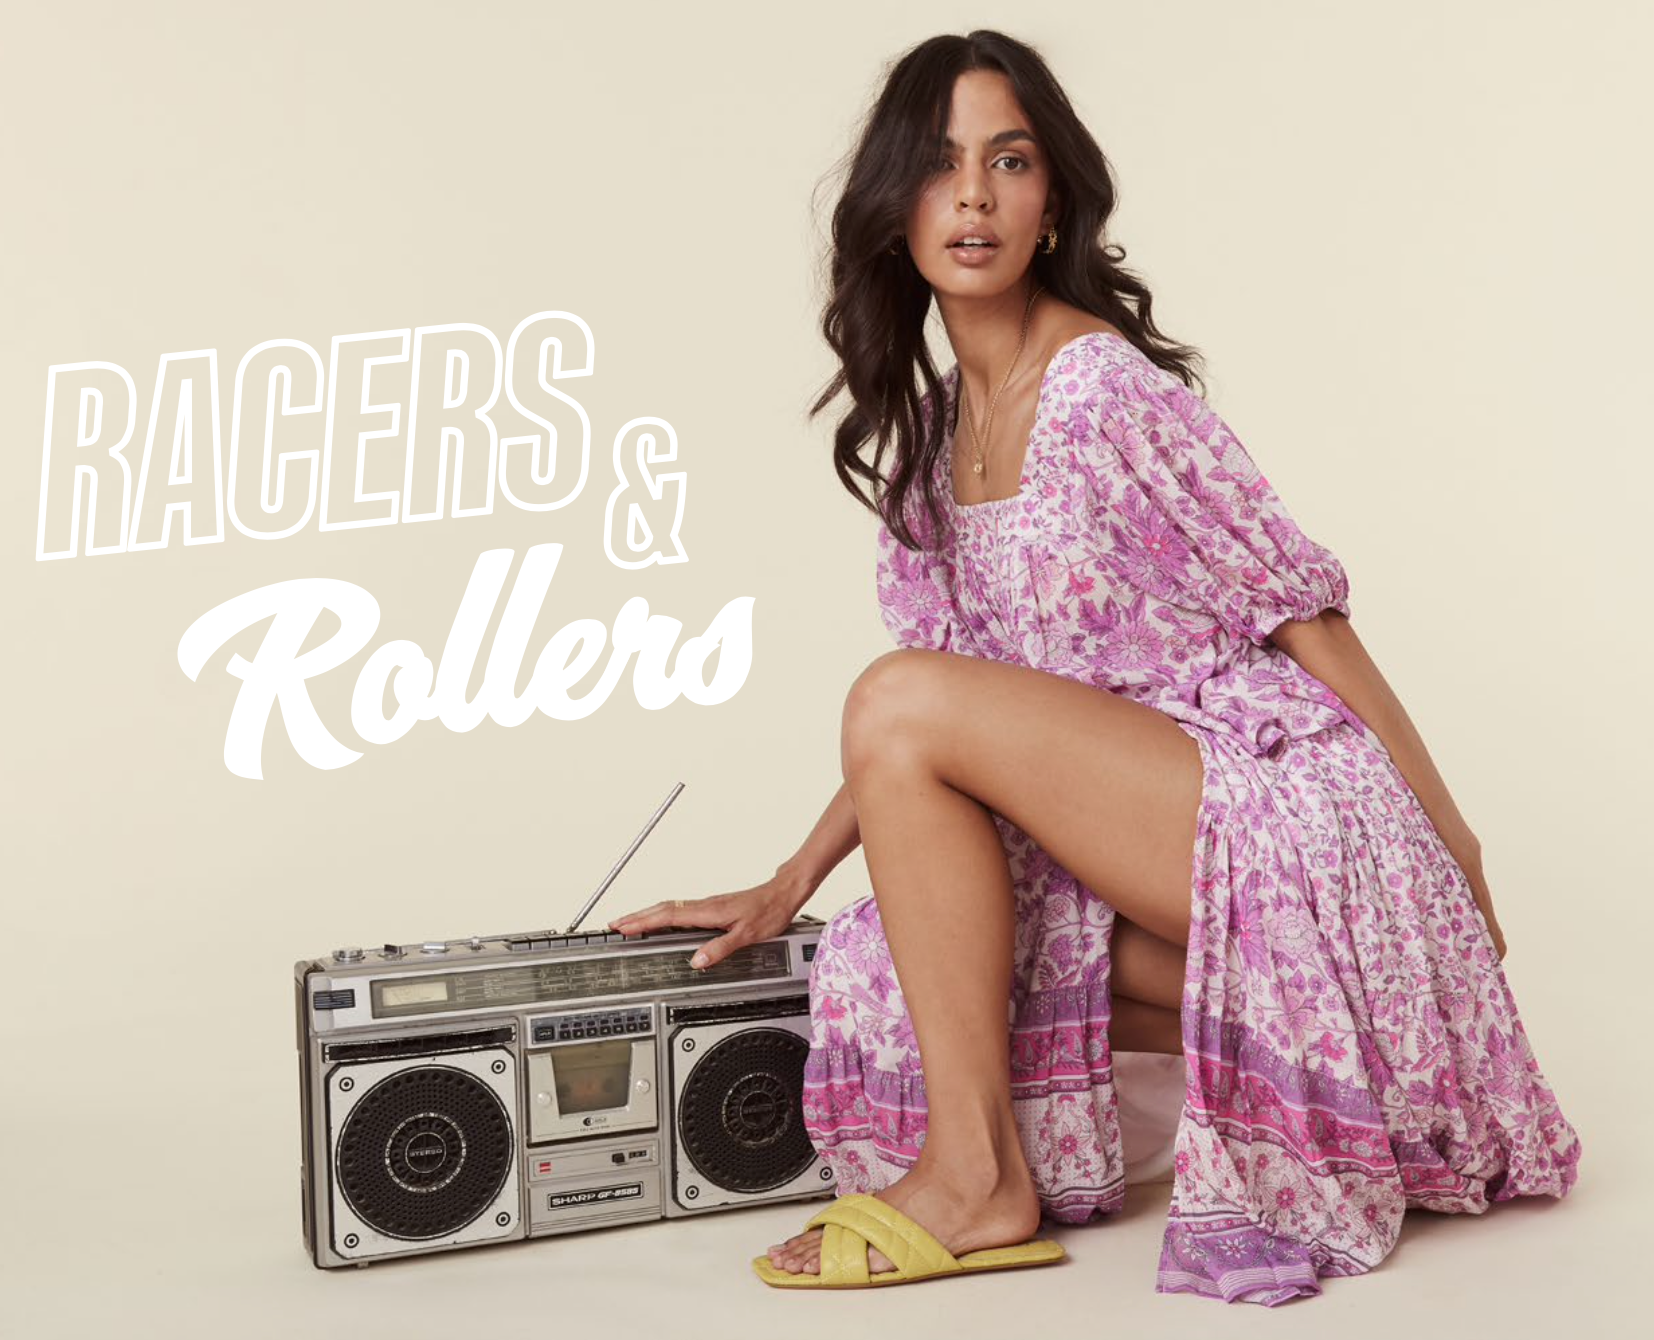 Racers & Rollers - Drop 2